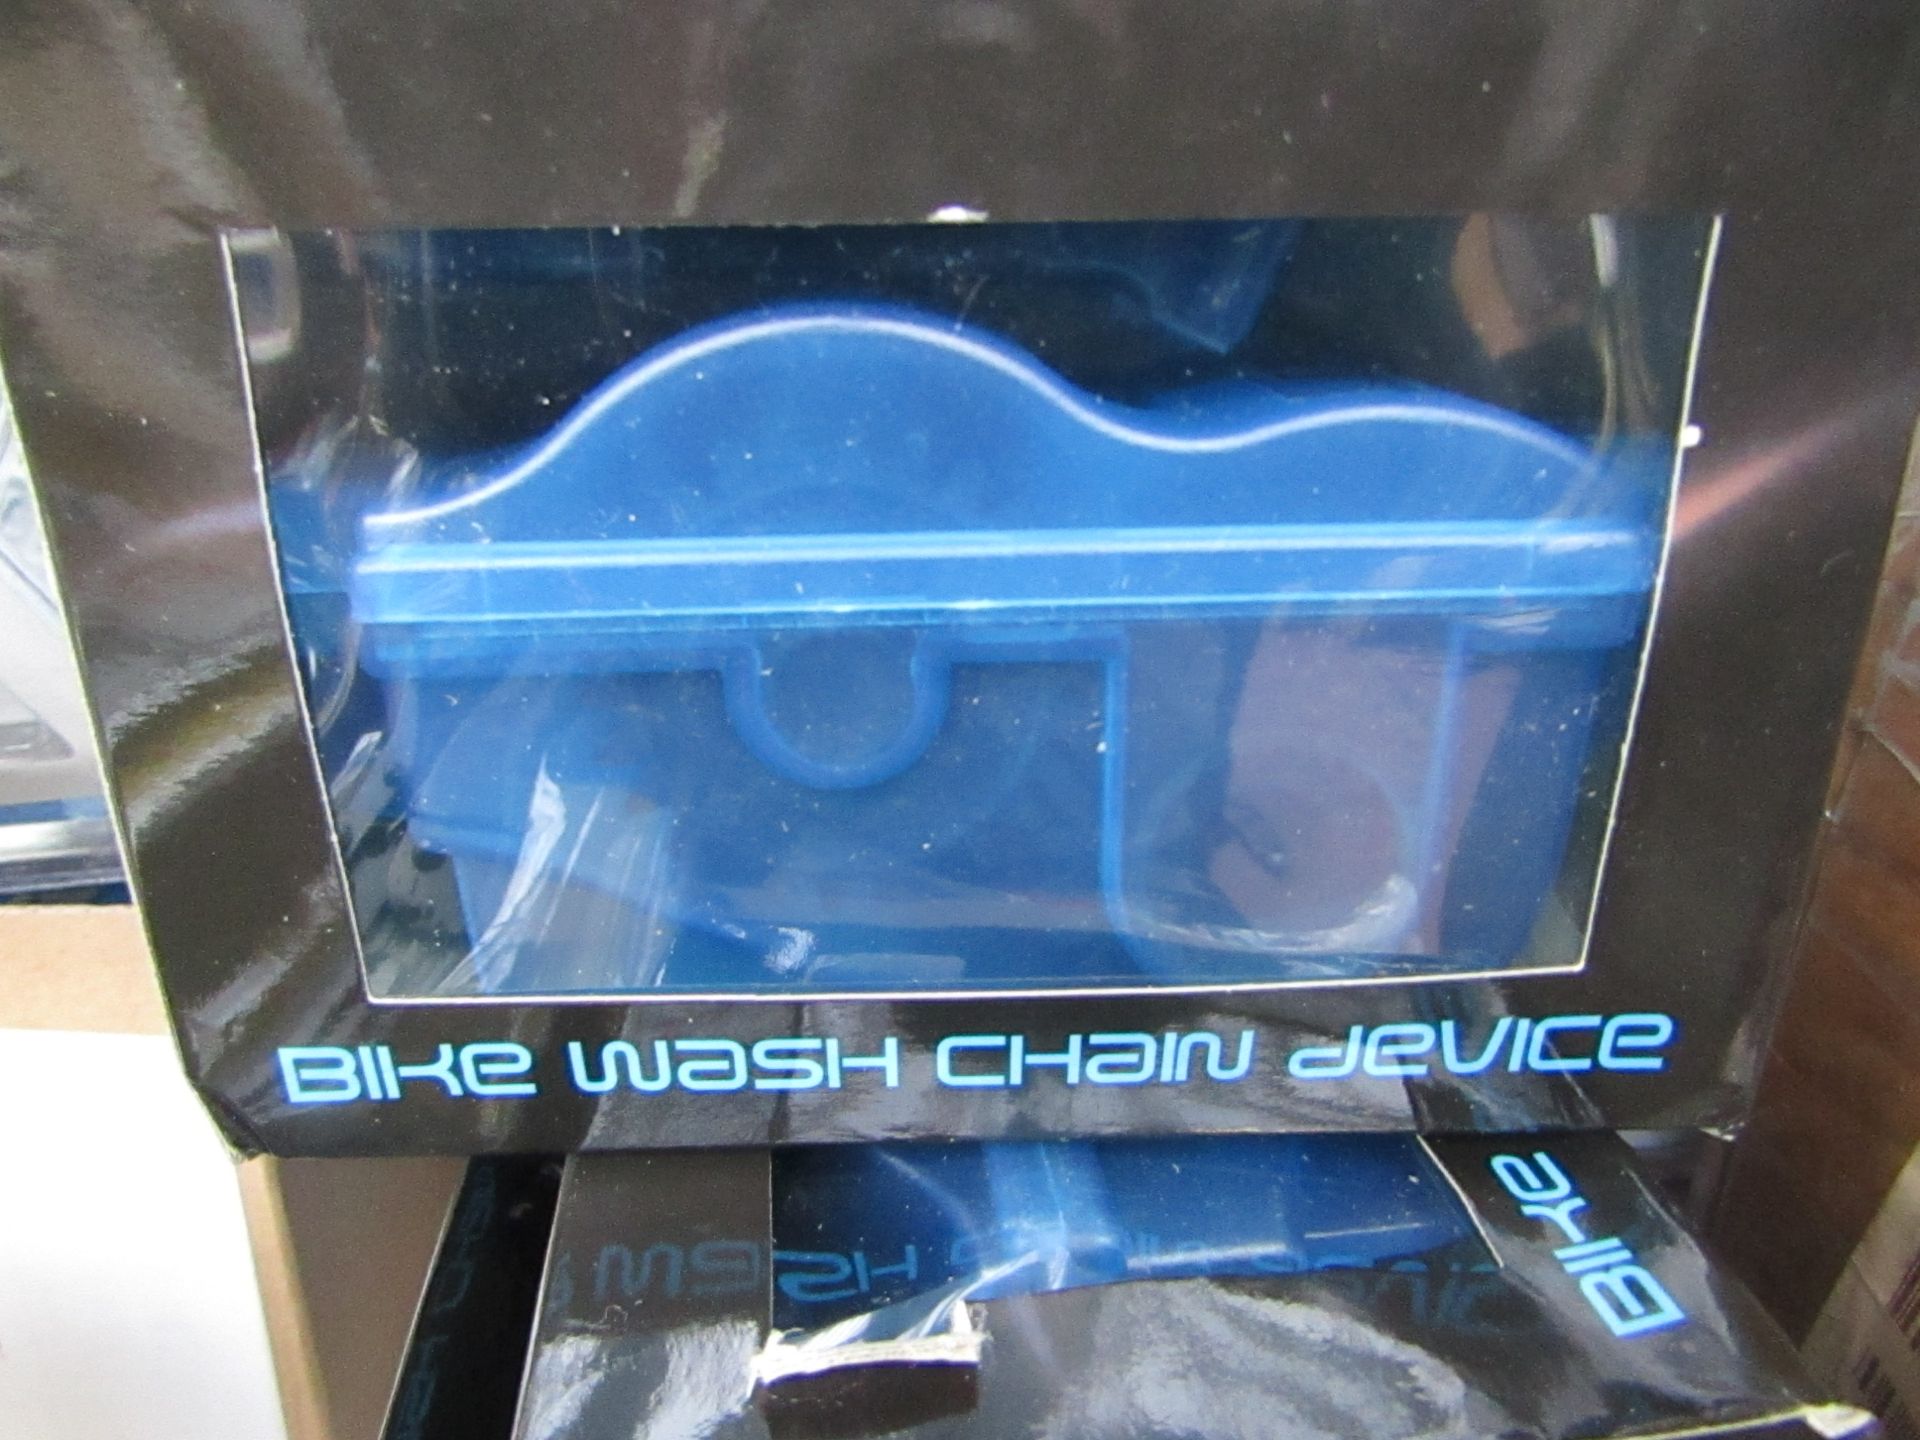 2x Bike chain wash devices, new